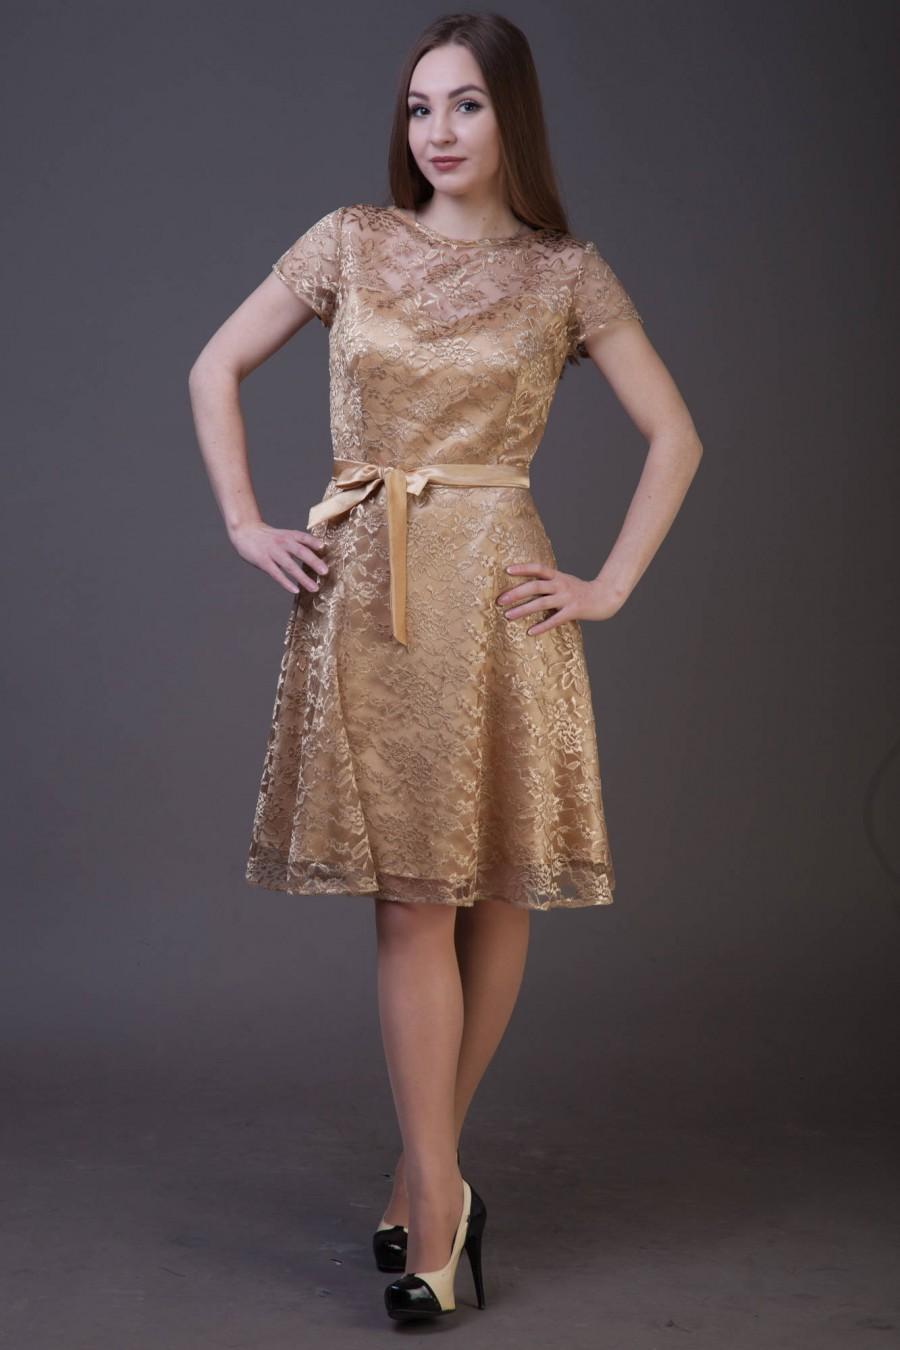 زفاف - Gold cocktail dress with sash. Bridesmaid dress with short sleeves. Party outfit women